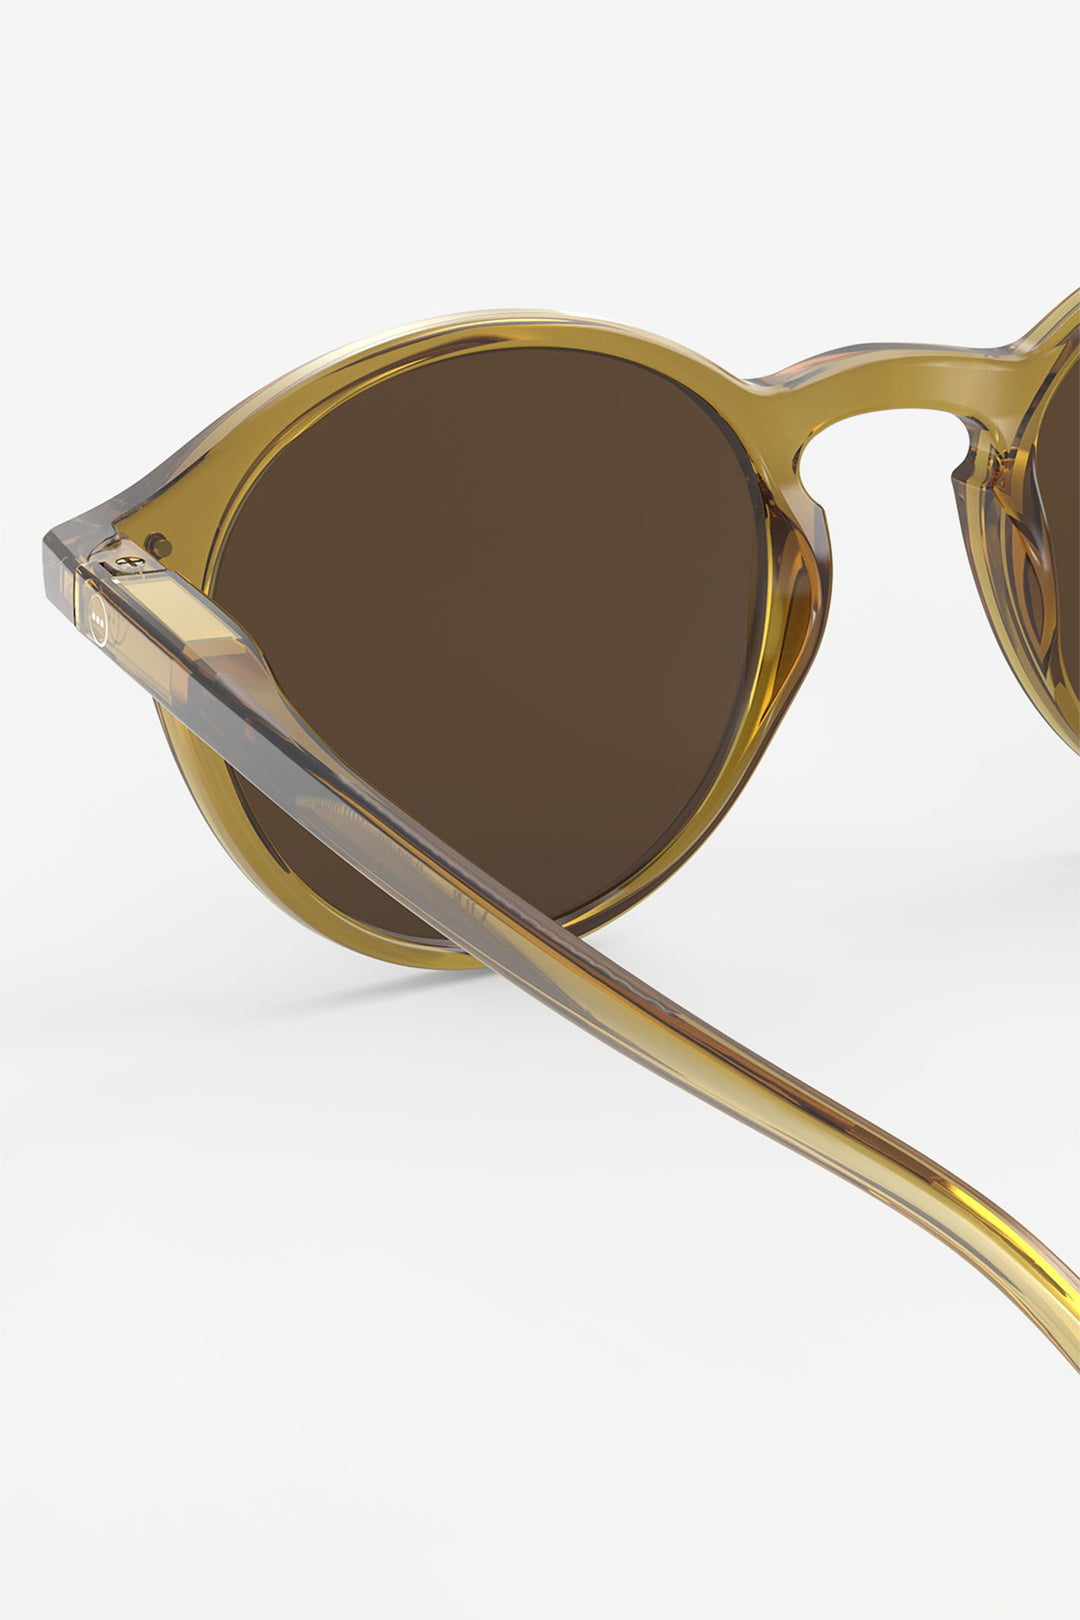 Izipizi Paris SLMSDC236 Golden Green Sunglasses - Olivia Grace Fashion